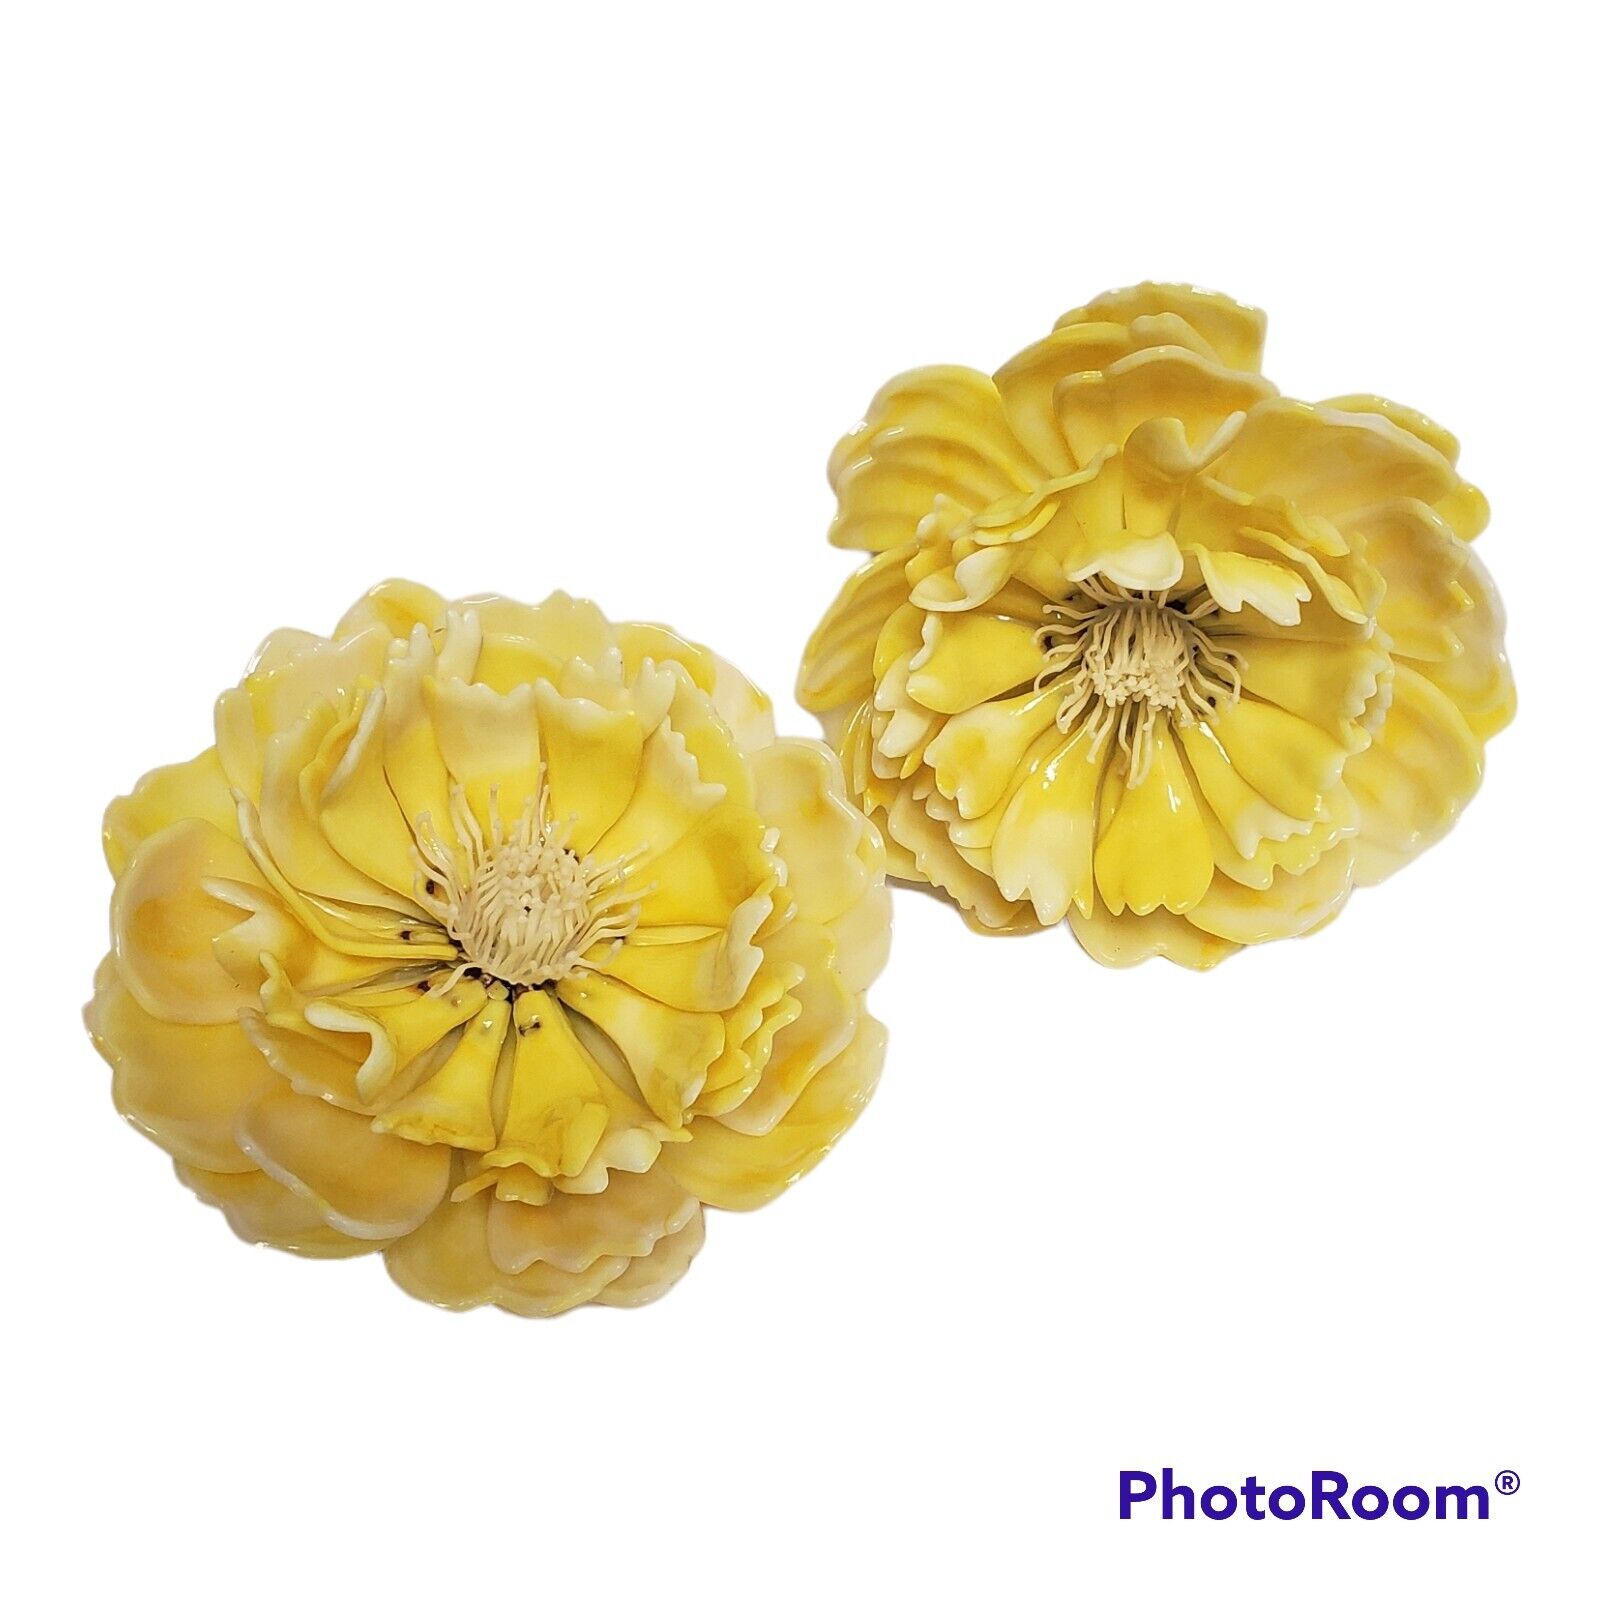 VTG 1968 C.K. IND. CO. LTD. RARE Celluloid Acetate Huge Yellow Lucite 3D Flowers